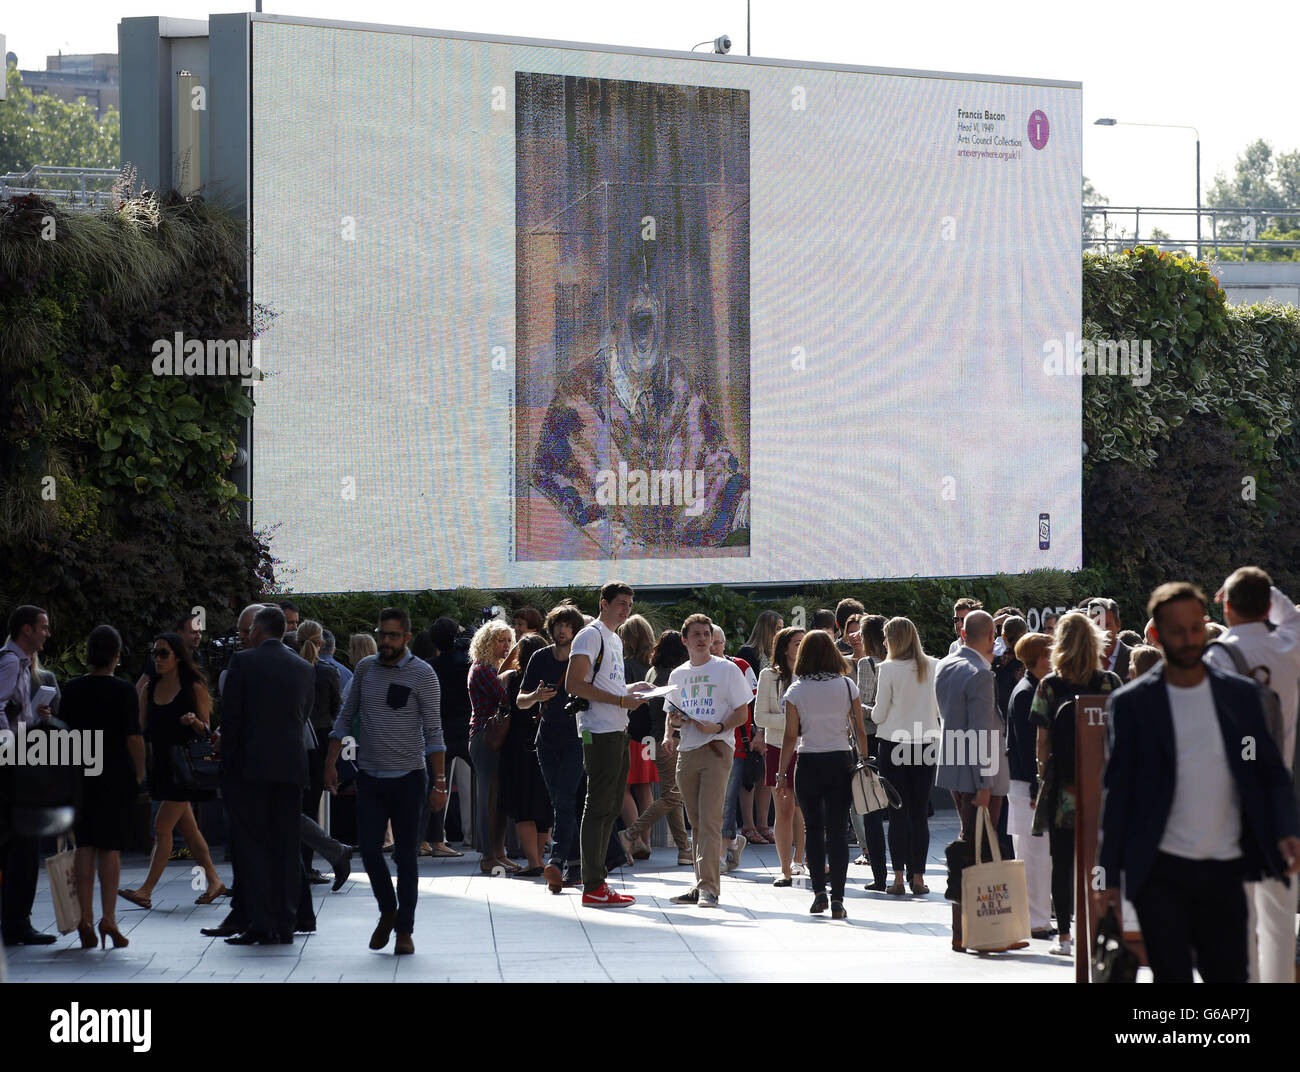 Les acheteurs passent par une reproduction numérique de la « tête » de Francis Bacon affichée sur le panneau d'affichage extérieur du centre commercial Westfield, Shepherd's Bush, Londres, pour lancer Art Everywhere. Banque D'Images